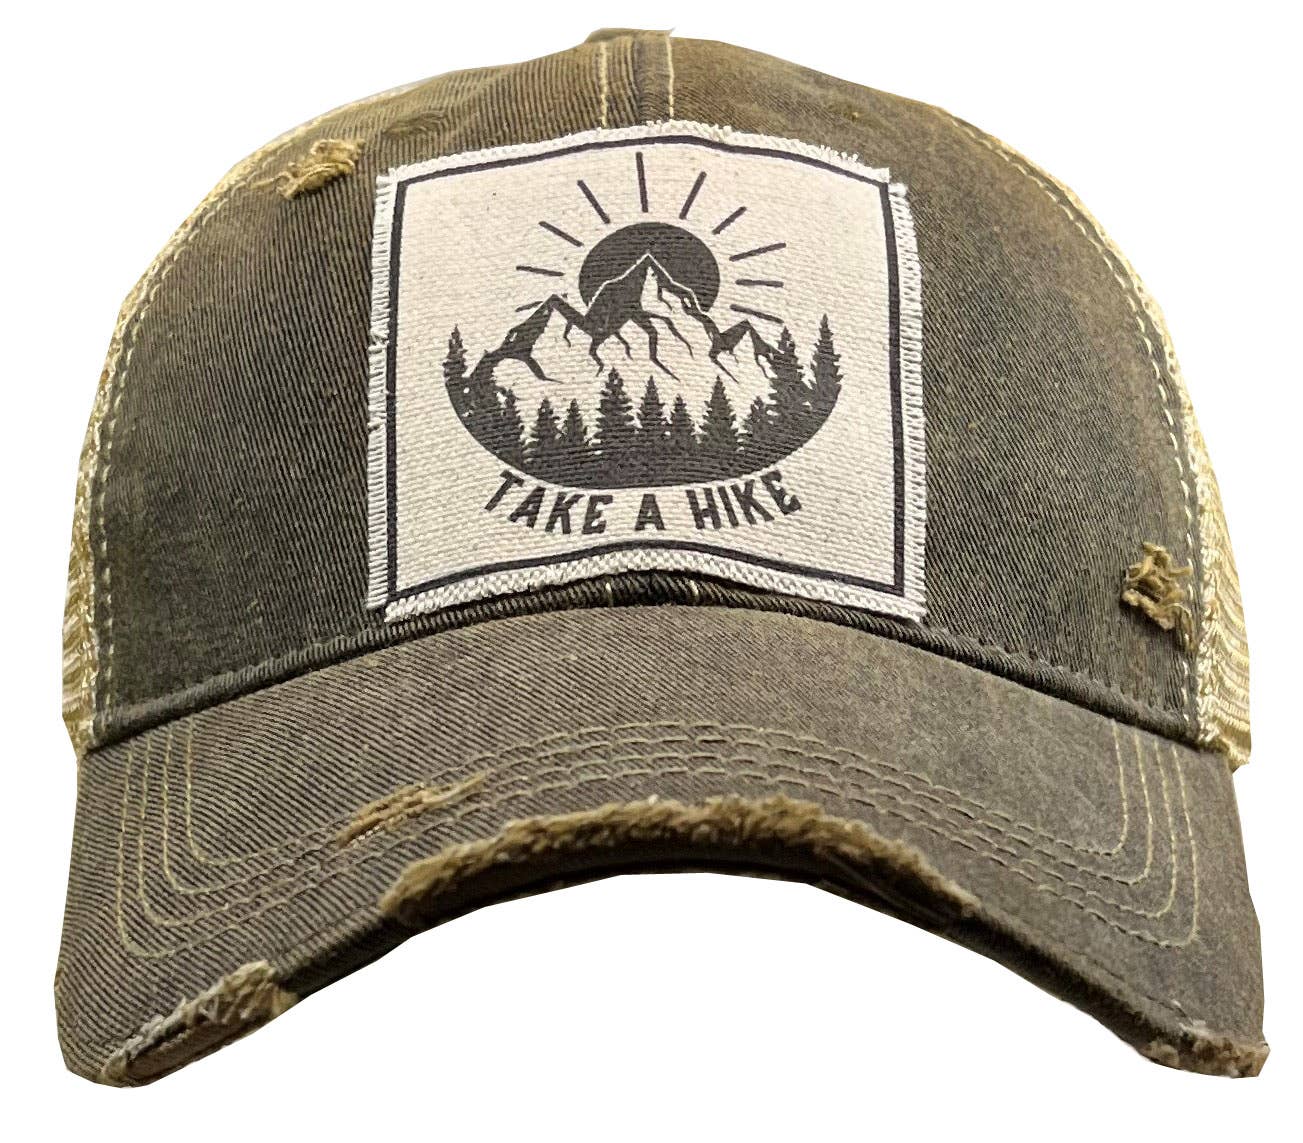 Take A Hike Trucker Hat Baseball Cap